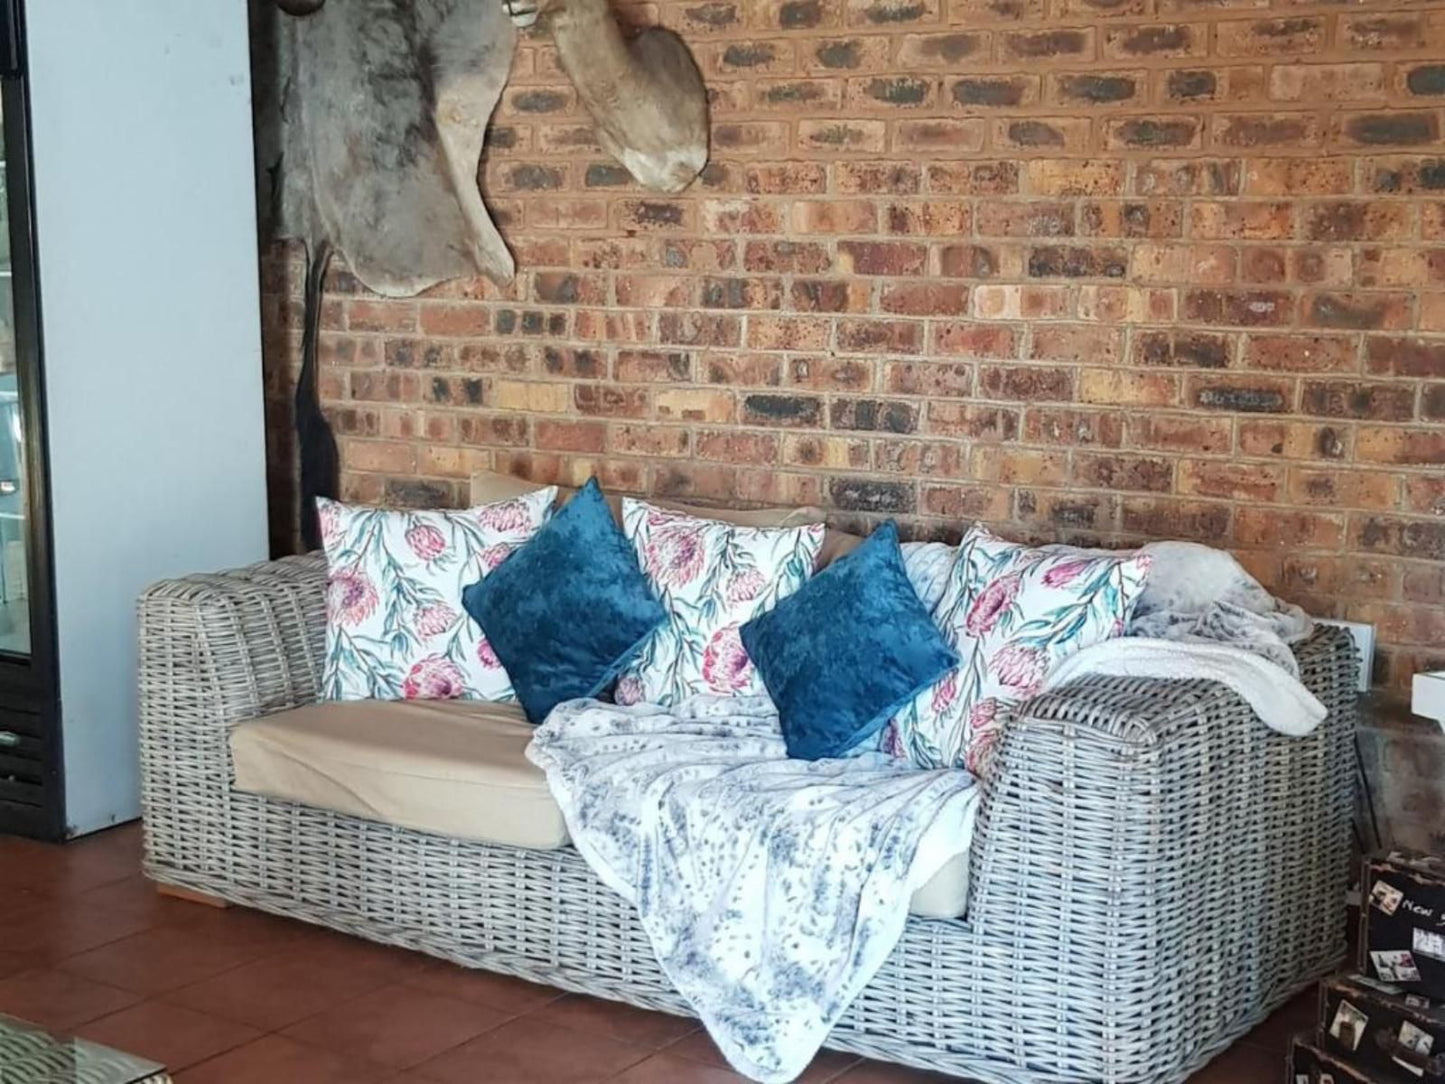 Royal Villa Guesthouse Brakpan Johannesburg Gauteng South Africa Bedroom